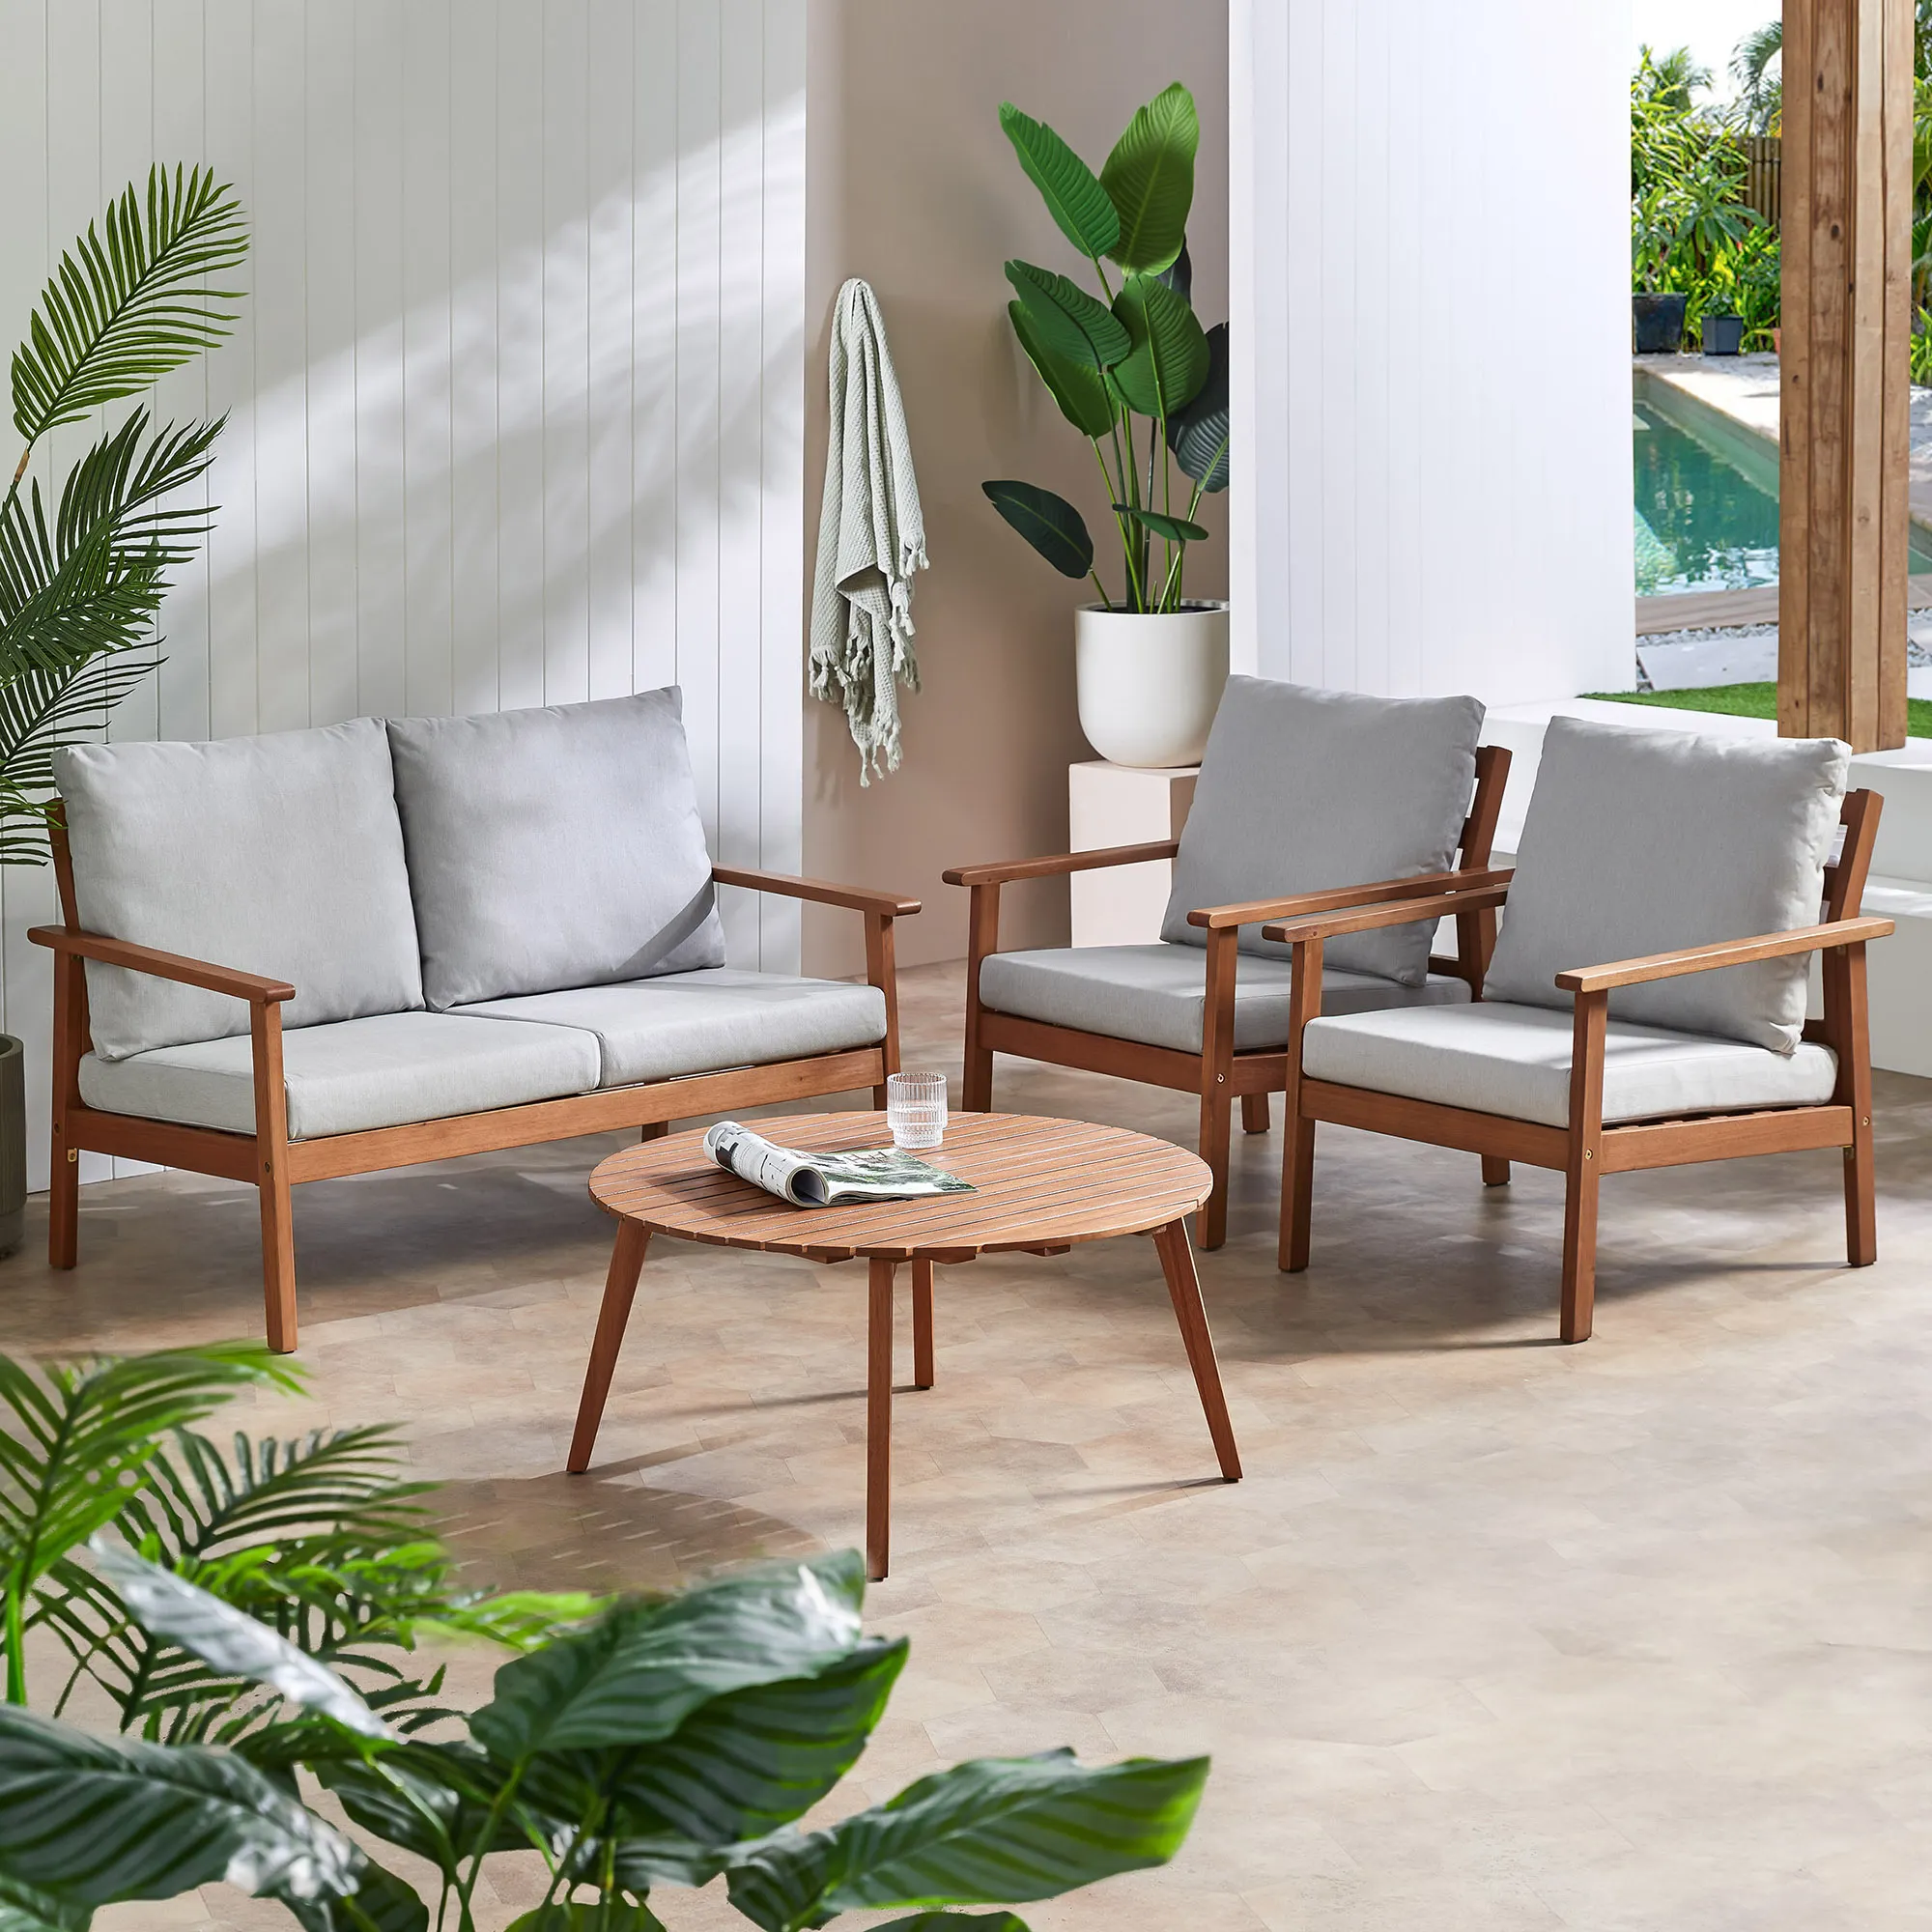 Set Sofa minimalis luar ruangan kayu jati kualitas terbaik dan desainnya-zaitun